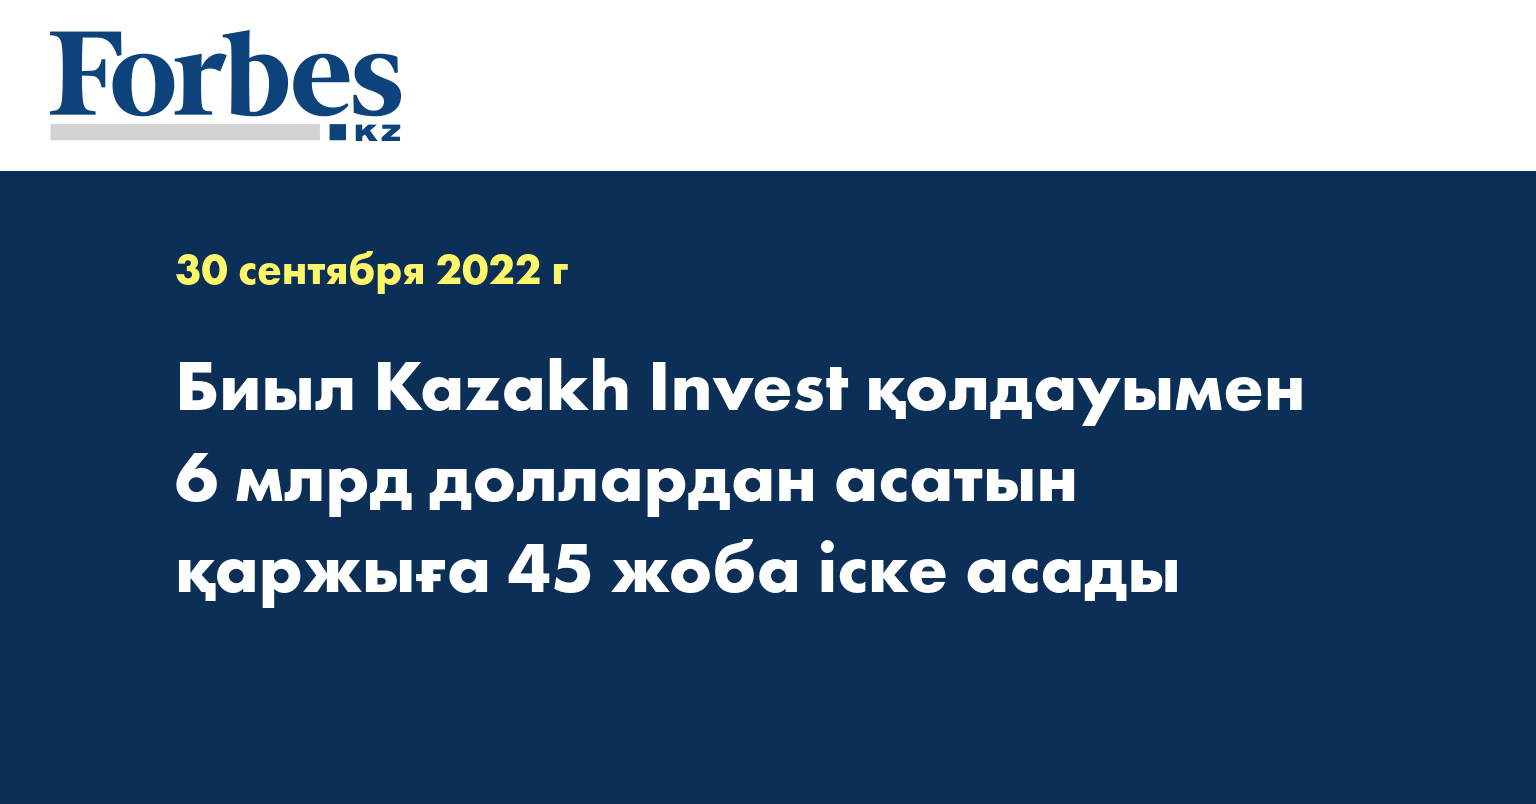 Биыл Kazakh Invest қолдауымен 6 млрд доллардан асатын қаржыға 45 жоба іске асады